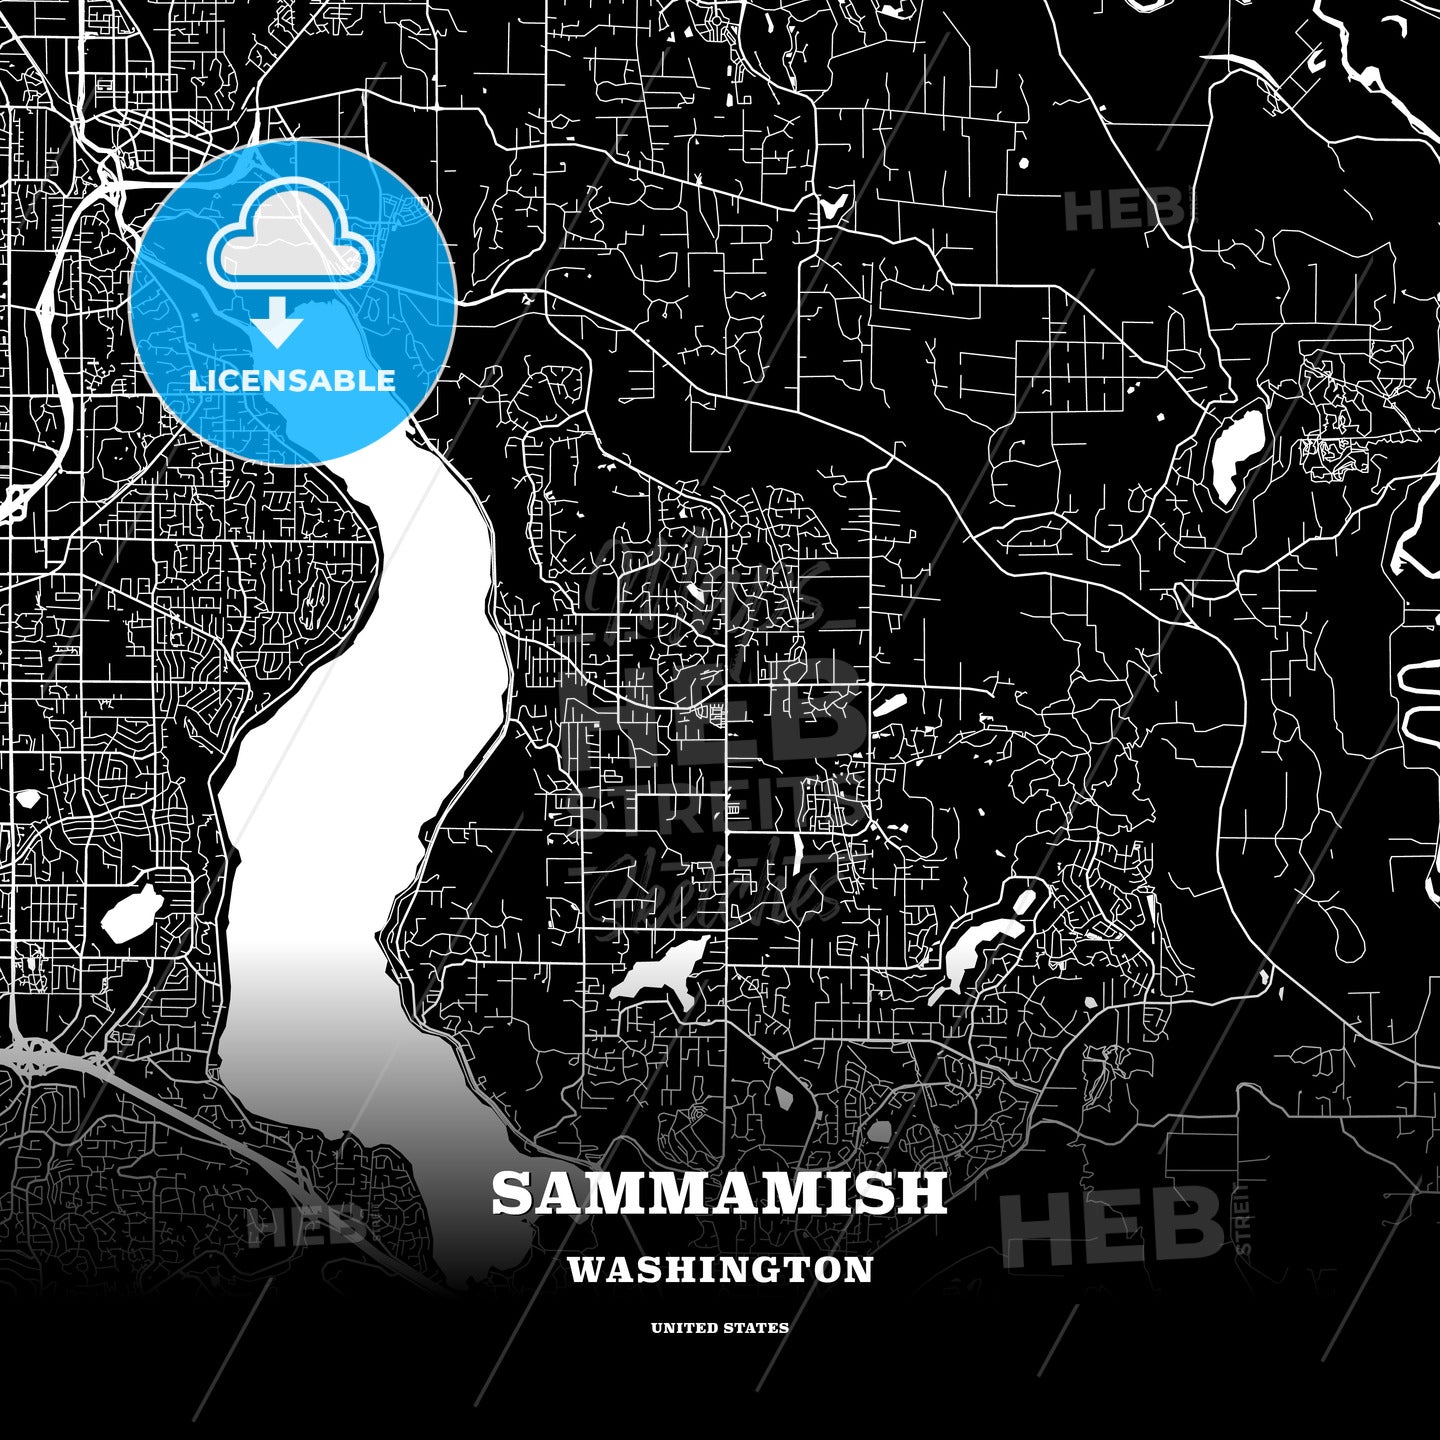 Sammamish, Washington, USA map